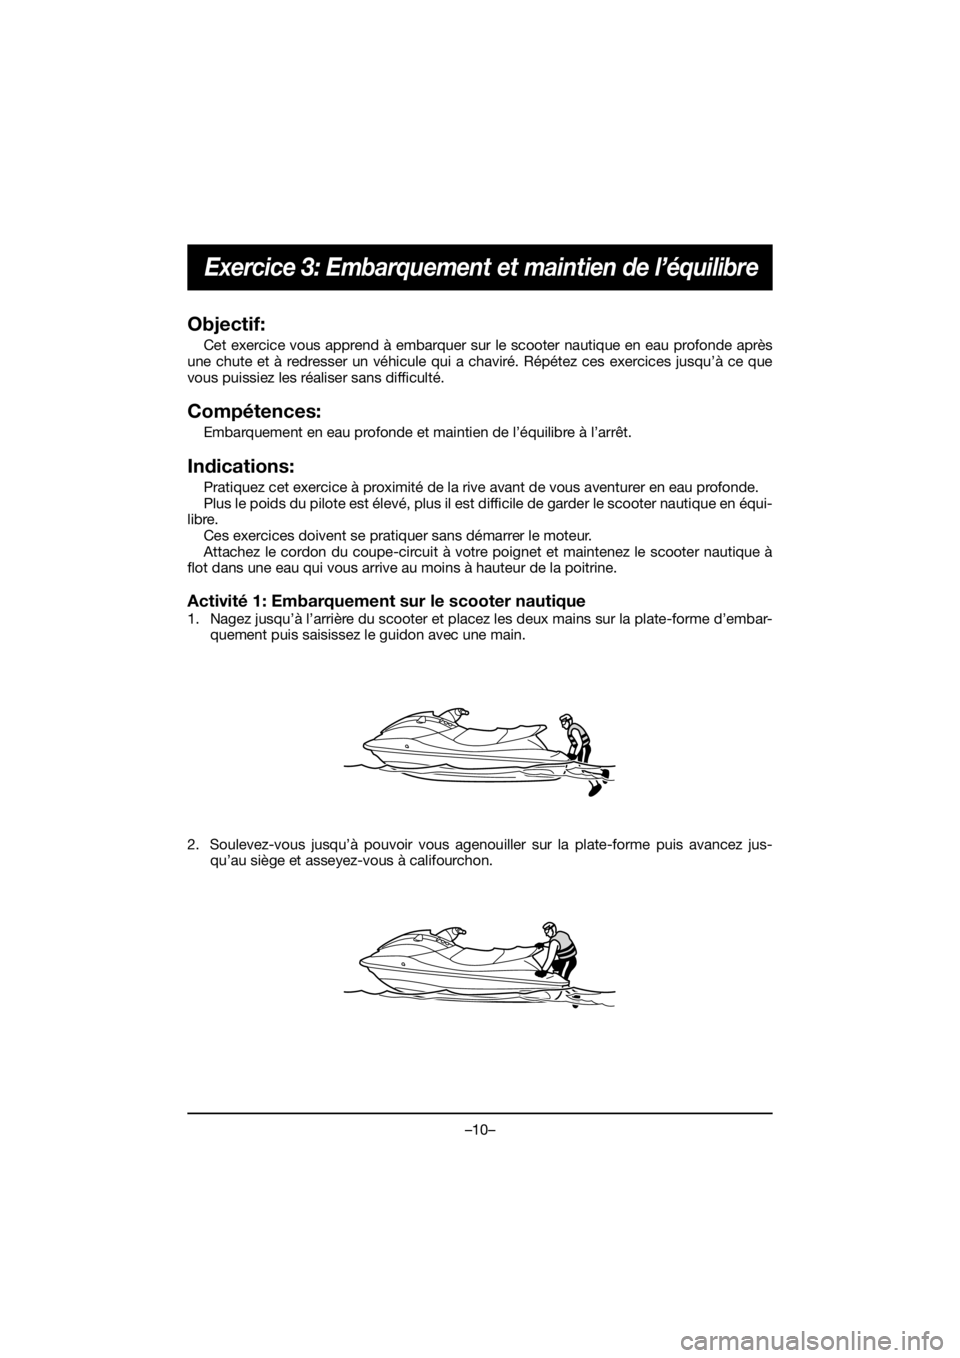 YAMAHA EX 2019  Manual de utilização (in Portuguese) –10–
Exercice 3: Embarquement et maintien de l’équilibre
Objectif:
Cet exercice vous apprend à embarquer sur le scooter nautique en eau profonde après
une chute et à redresser un véhicule q